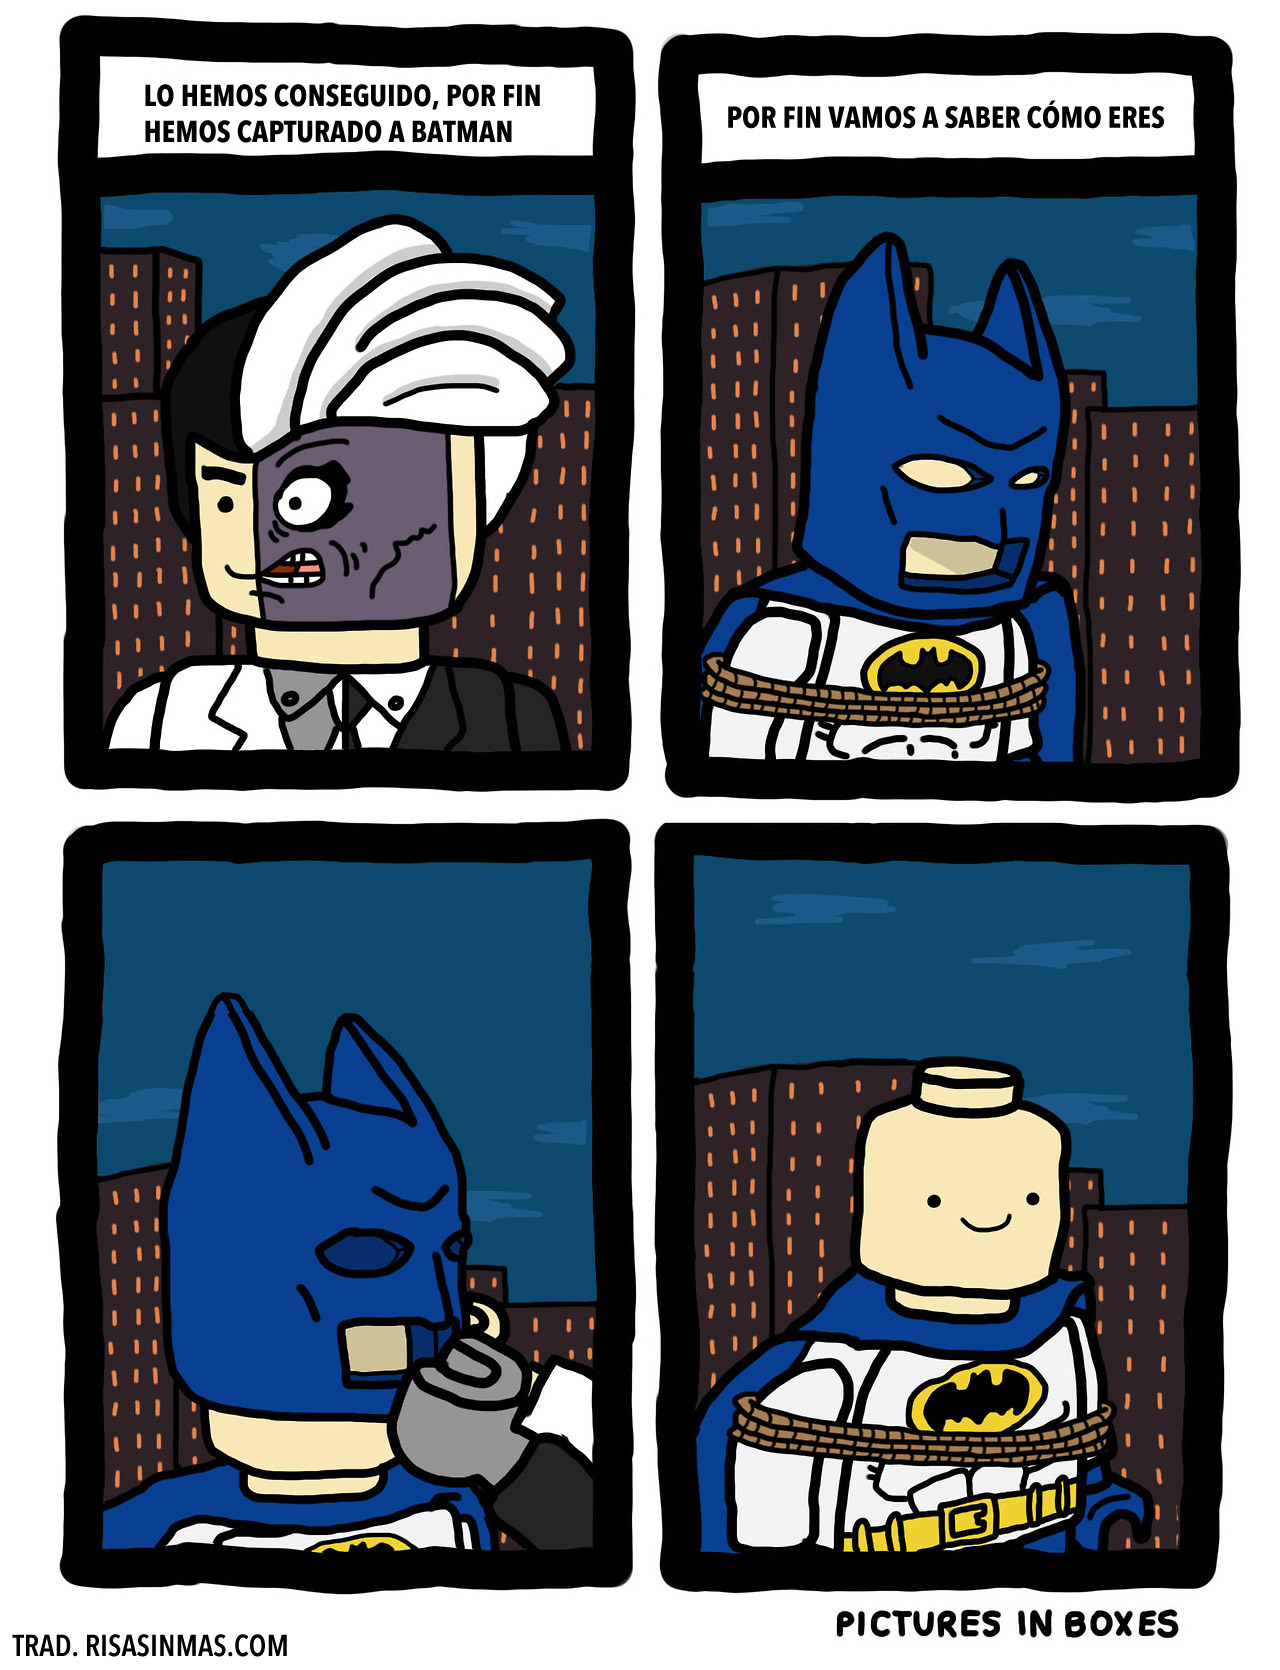 El aspecto de Batman